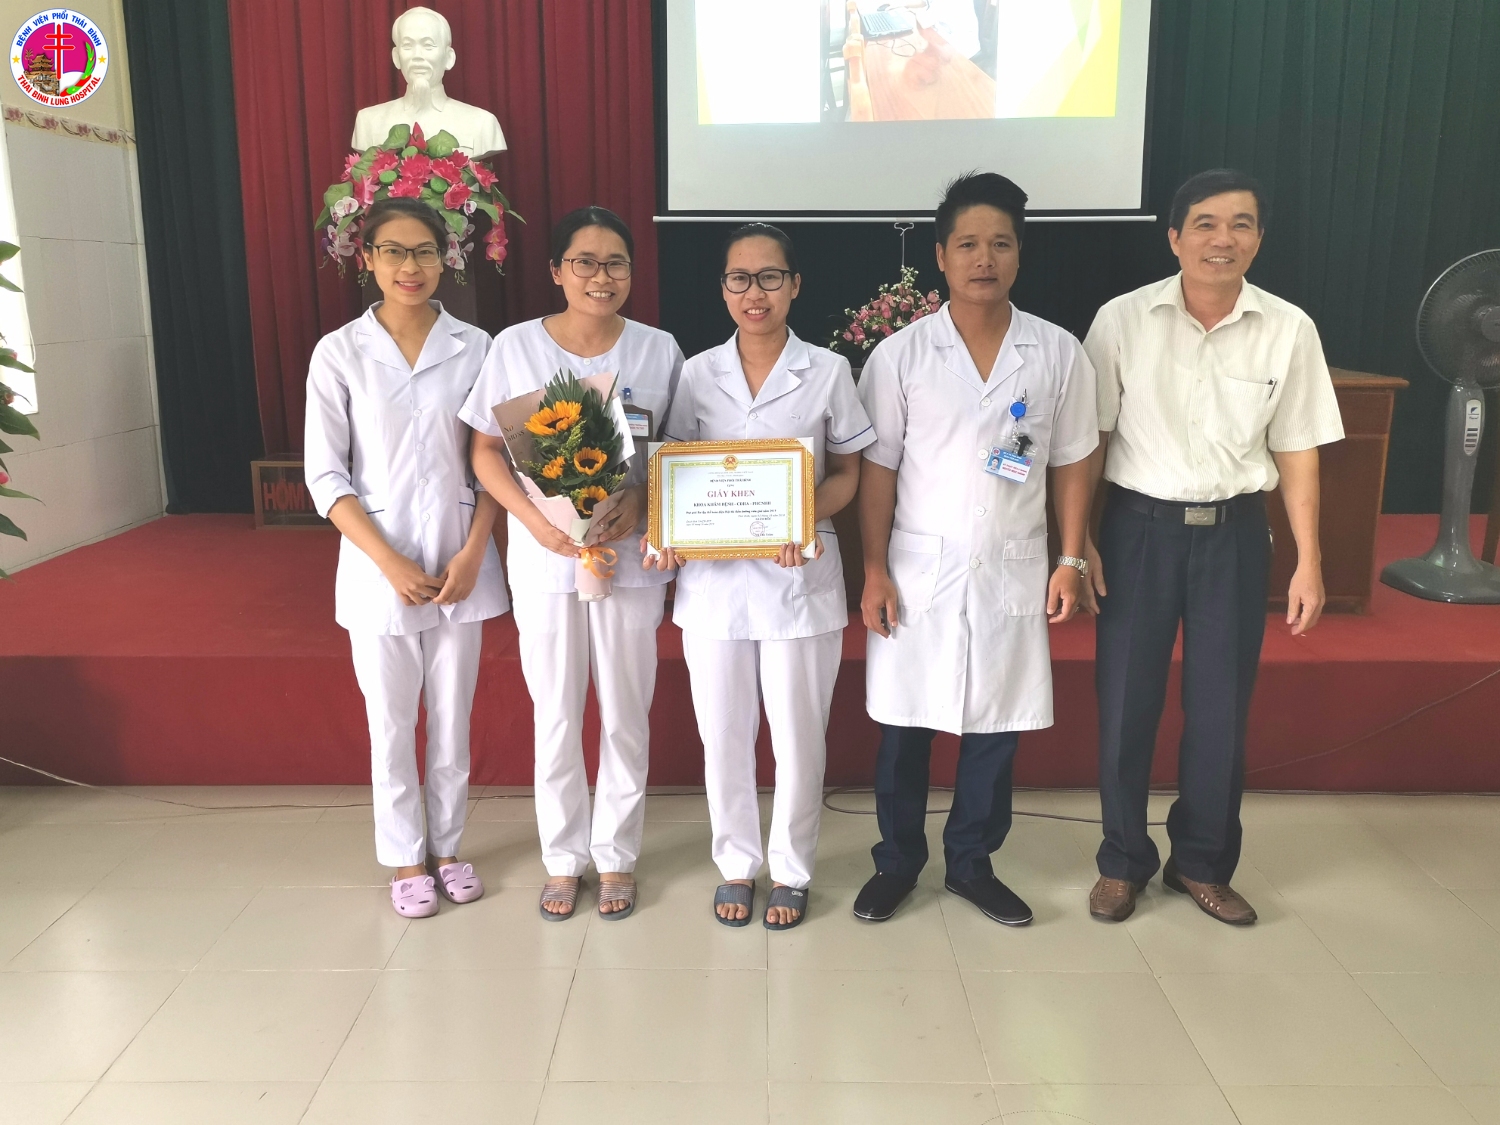 Đồng chí Vũ Văn Trâm - Giám đốc Bệnh viện, Trường BCĐ hội thi trao giải Ba tập thể cho khoa Khám bệnh - CĐHA - PHCNHH